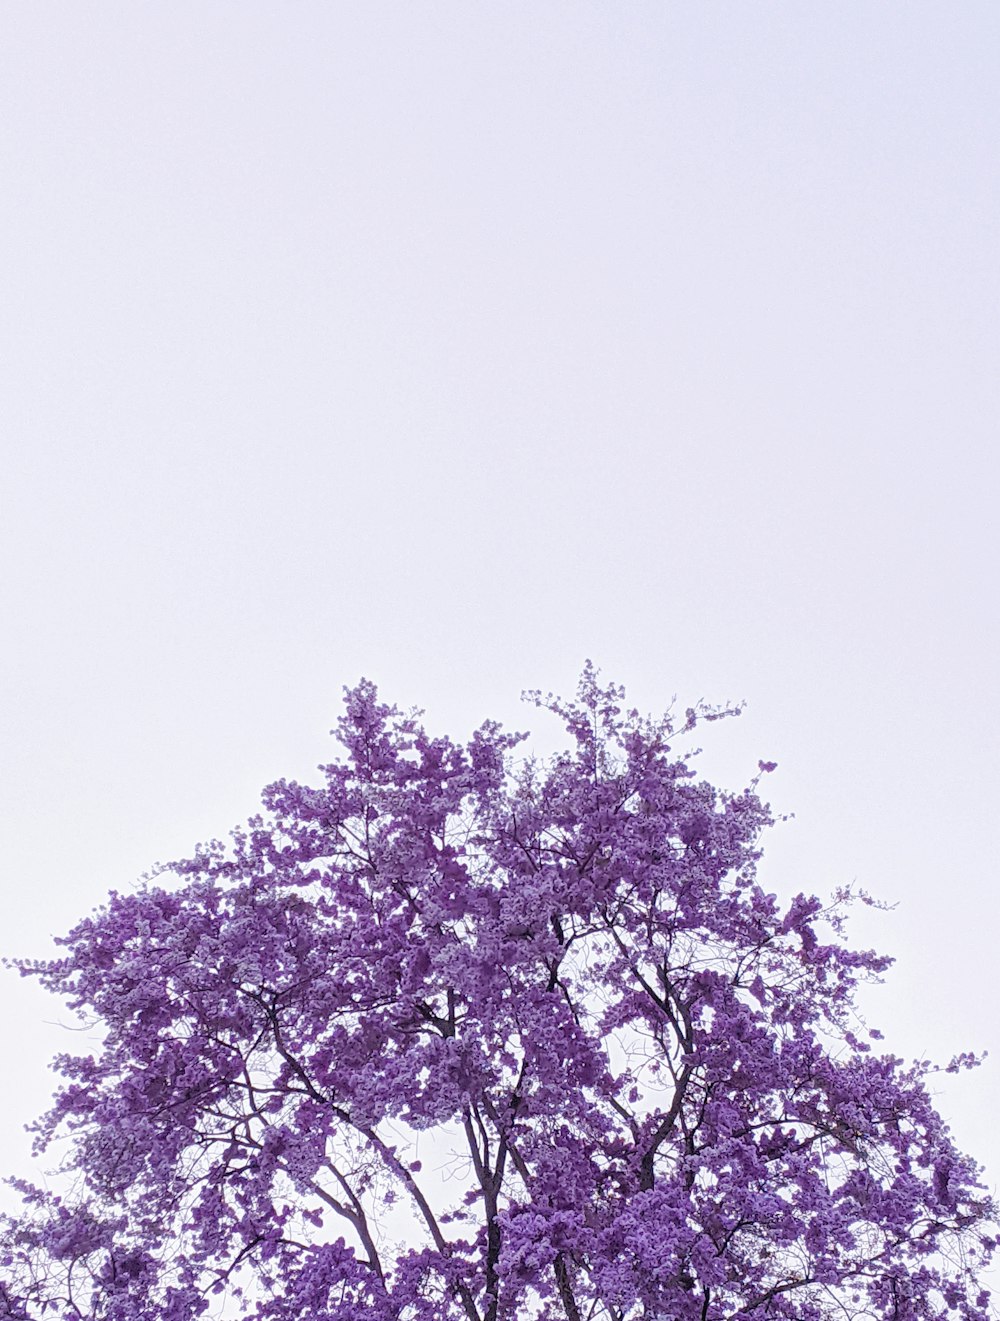 purple leaf tree under white sky